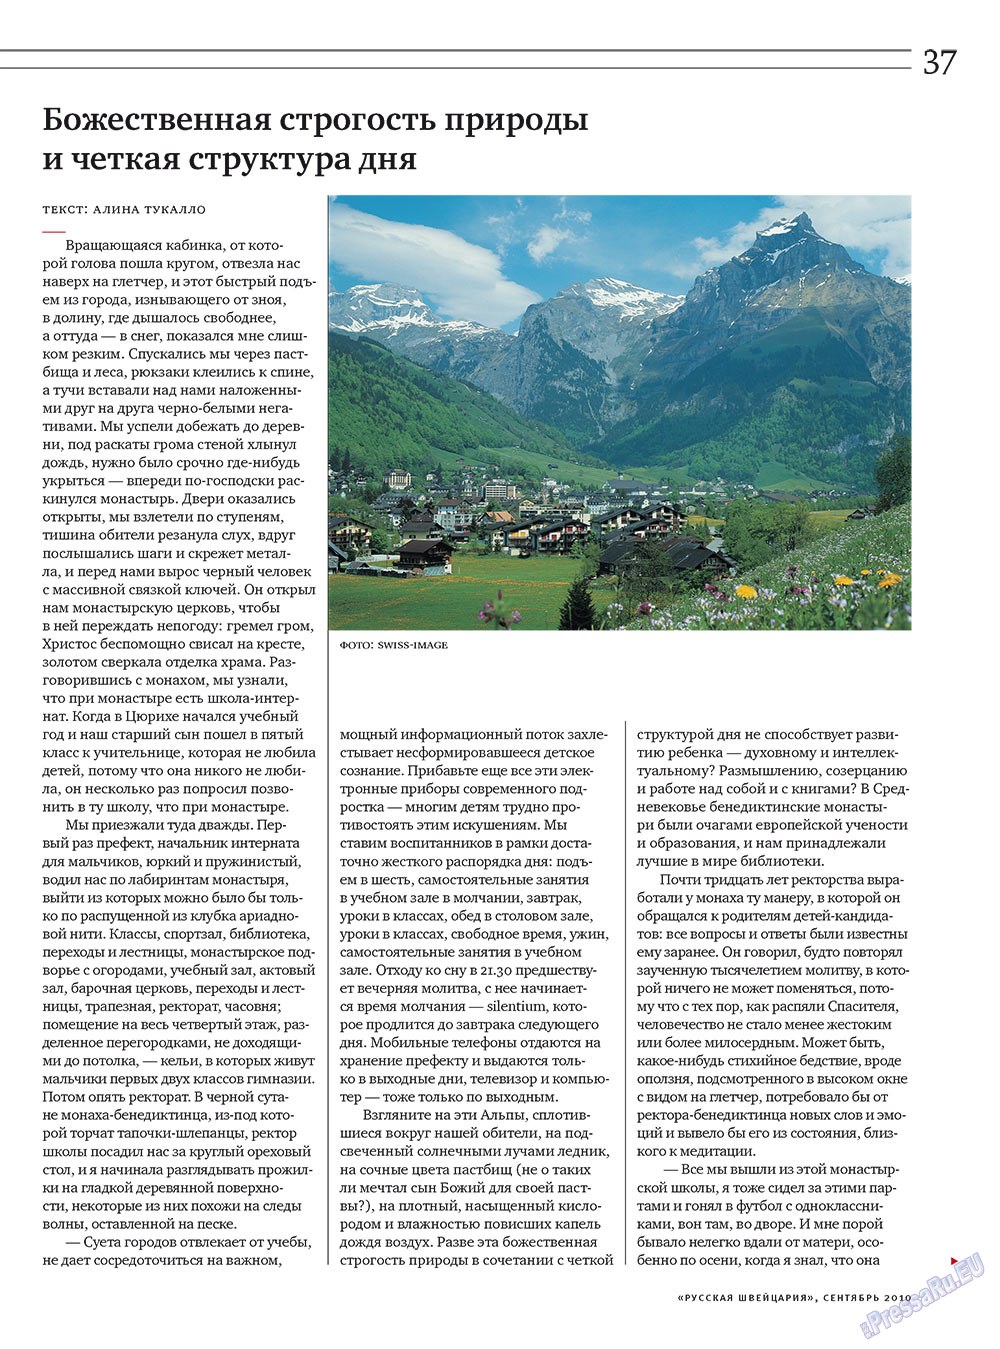 Русская Швейцария, журнал. 2010 №7 стр.37